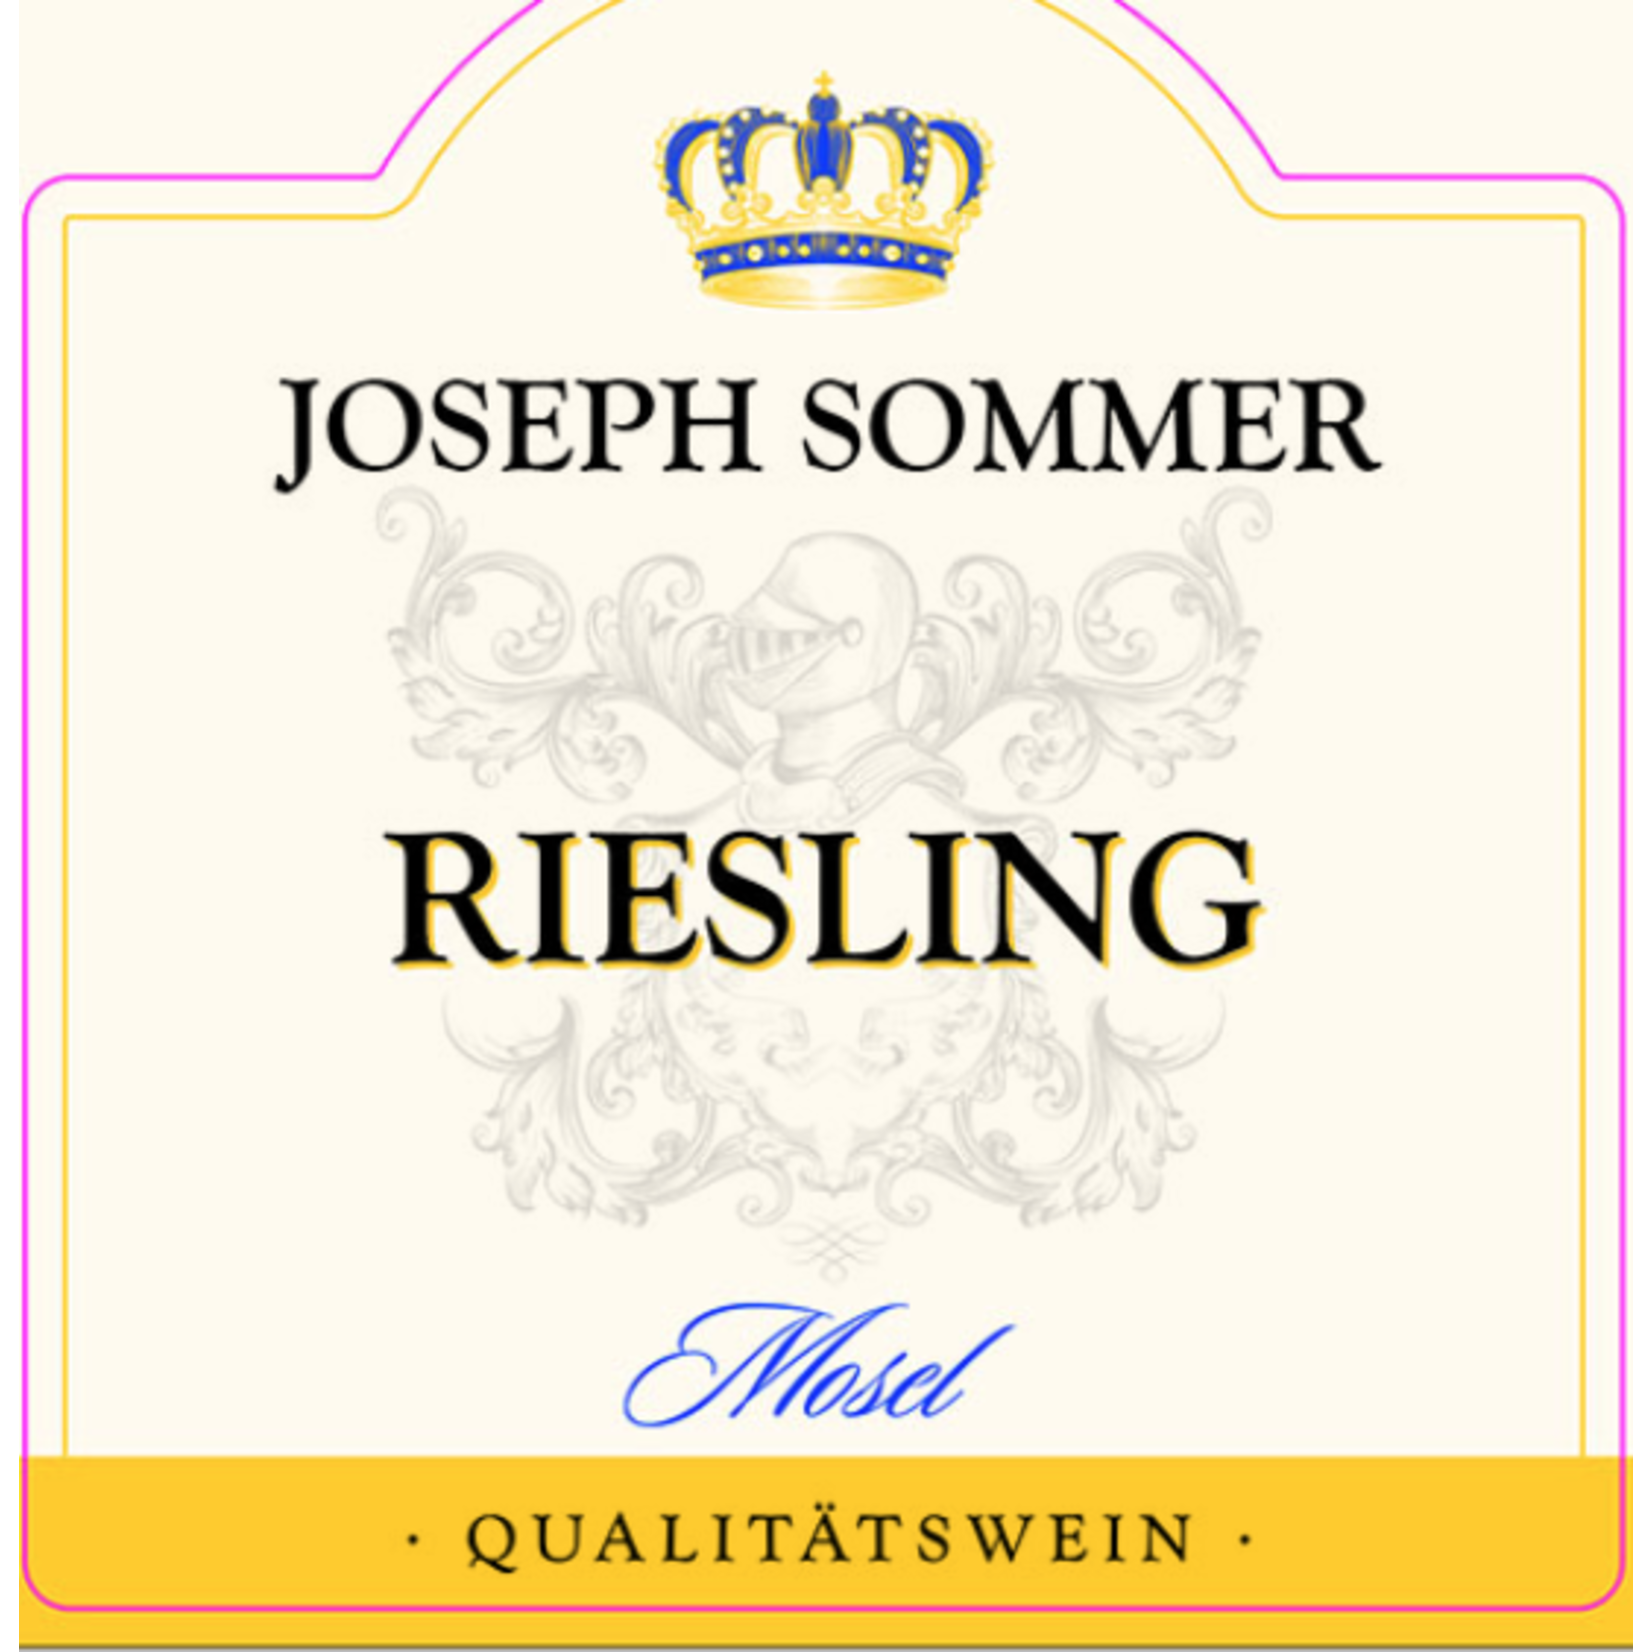 Joseph Sommer Joseph Sommer Riesling 2018 Mosel, Germany